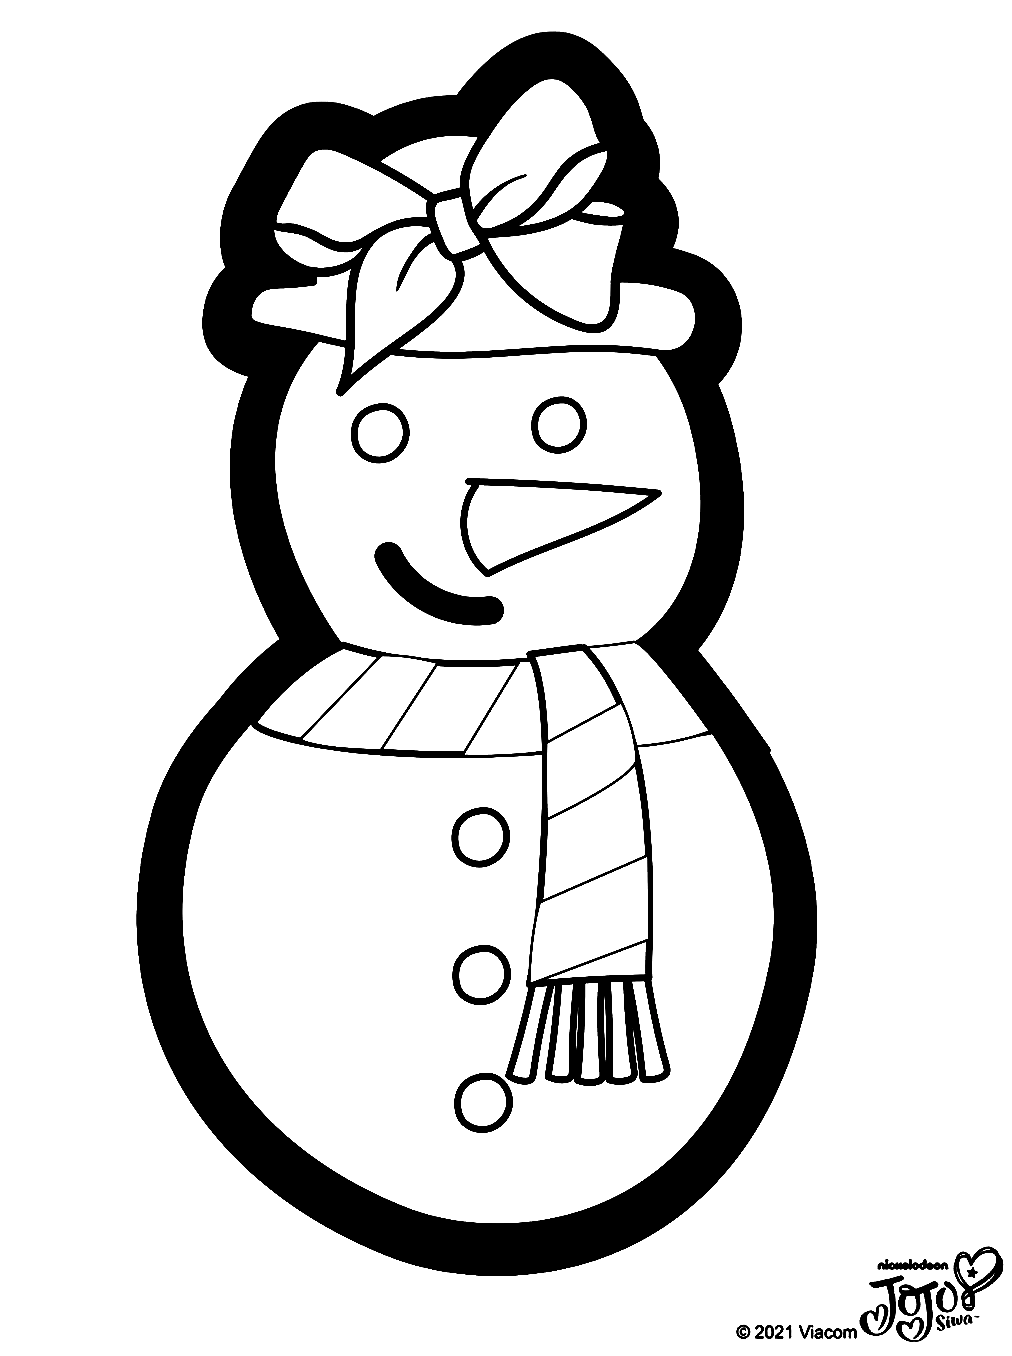 Desenho de boneco de neve com laço de cabelo de Jojo Siwa para colorir